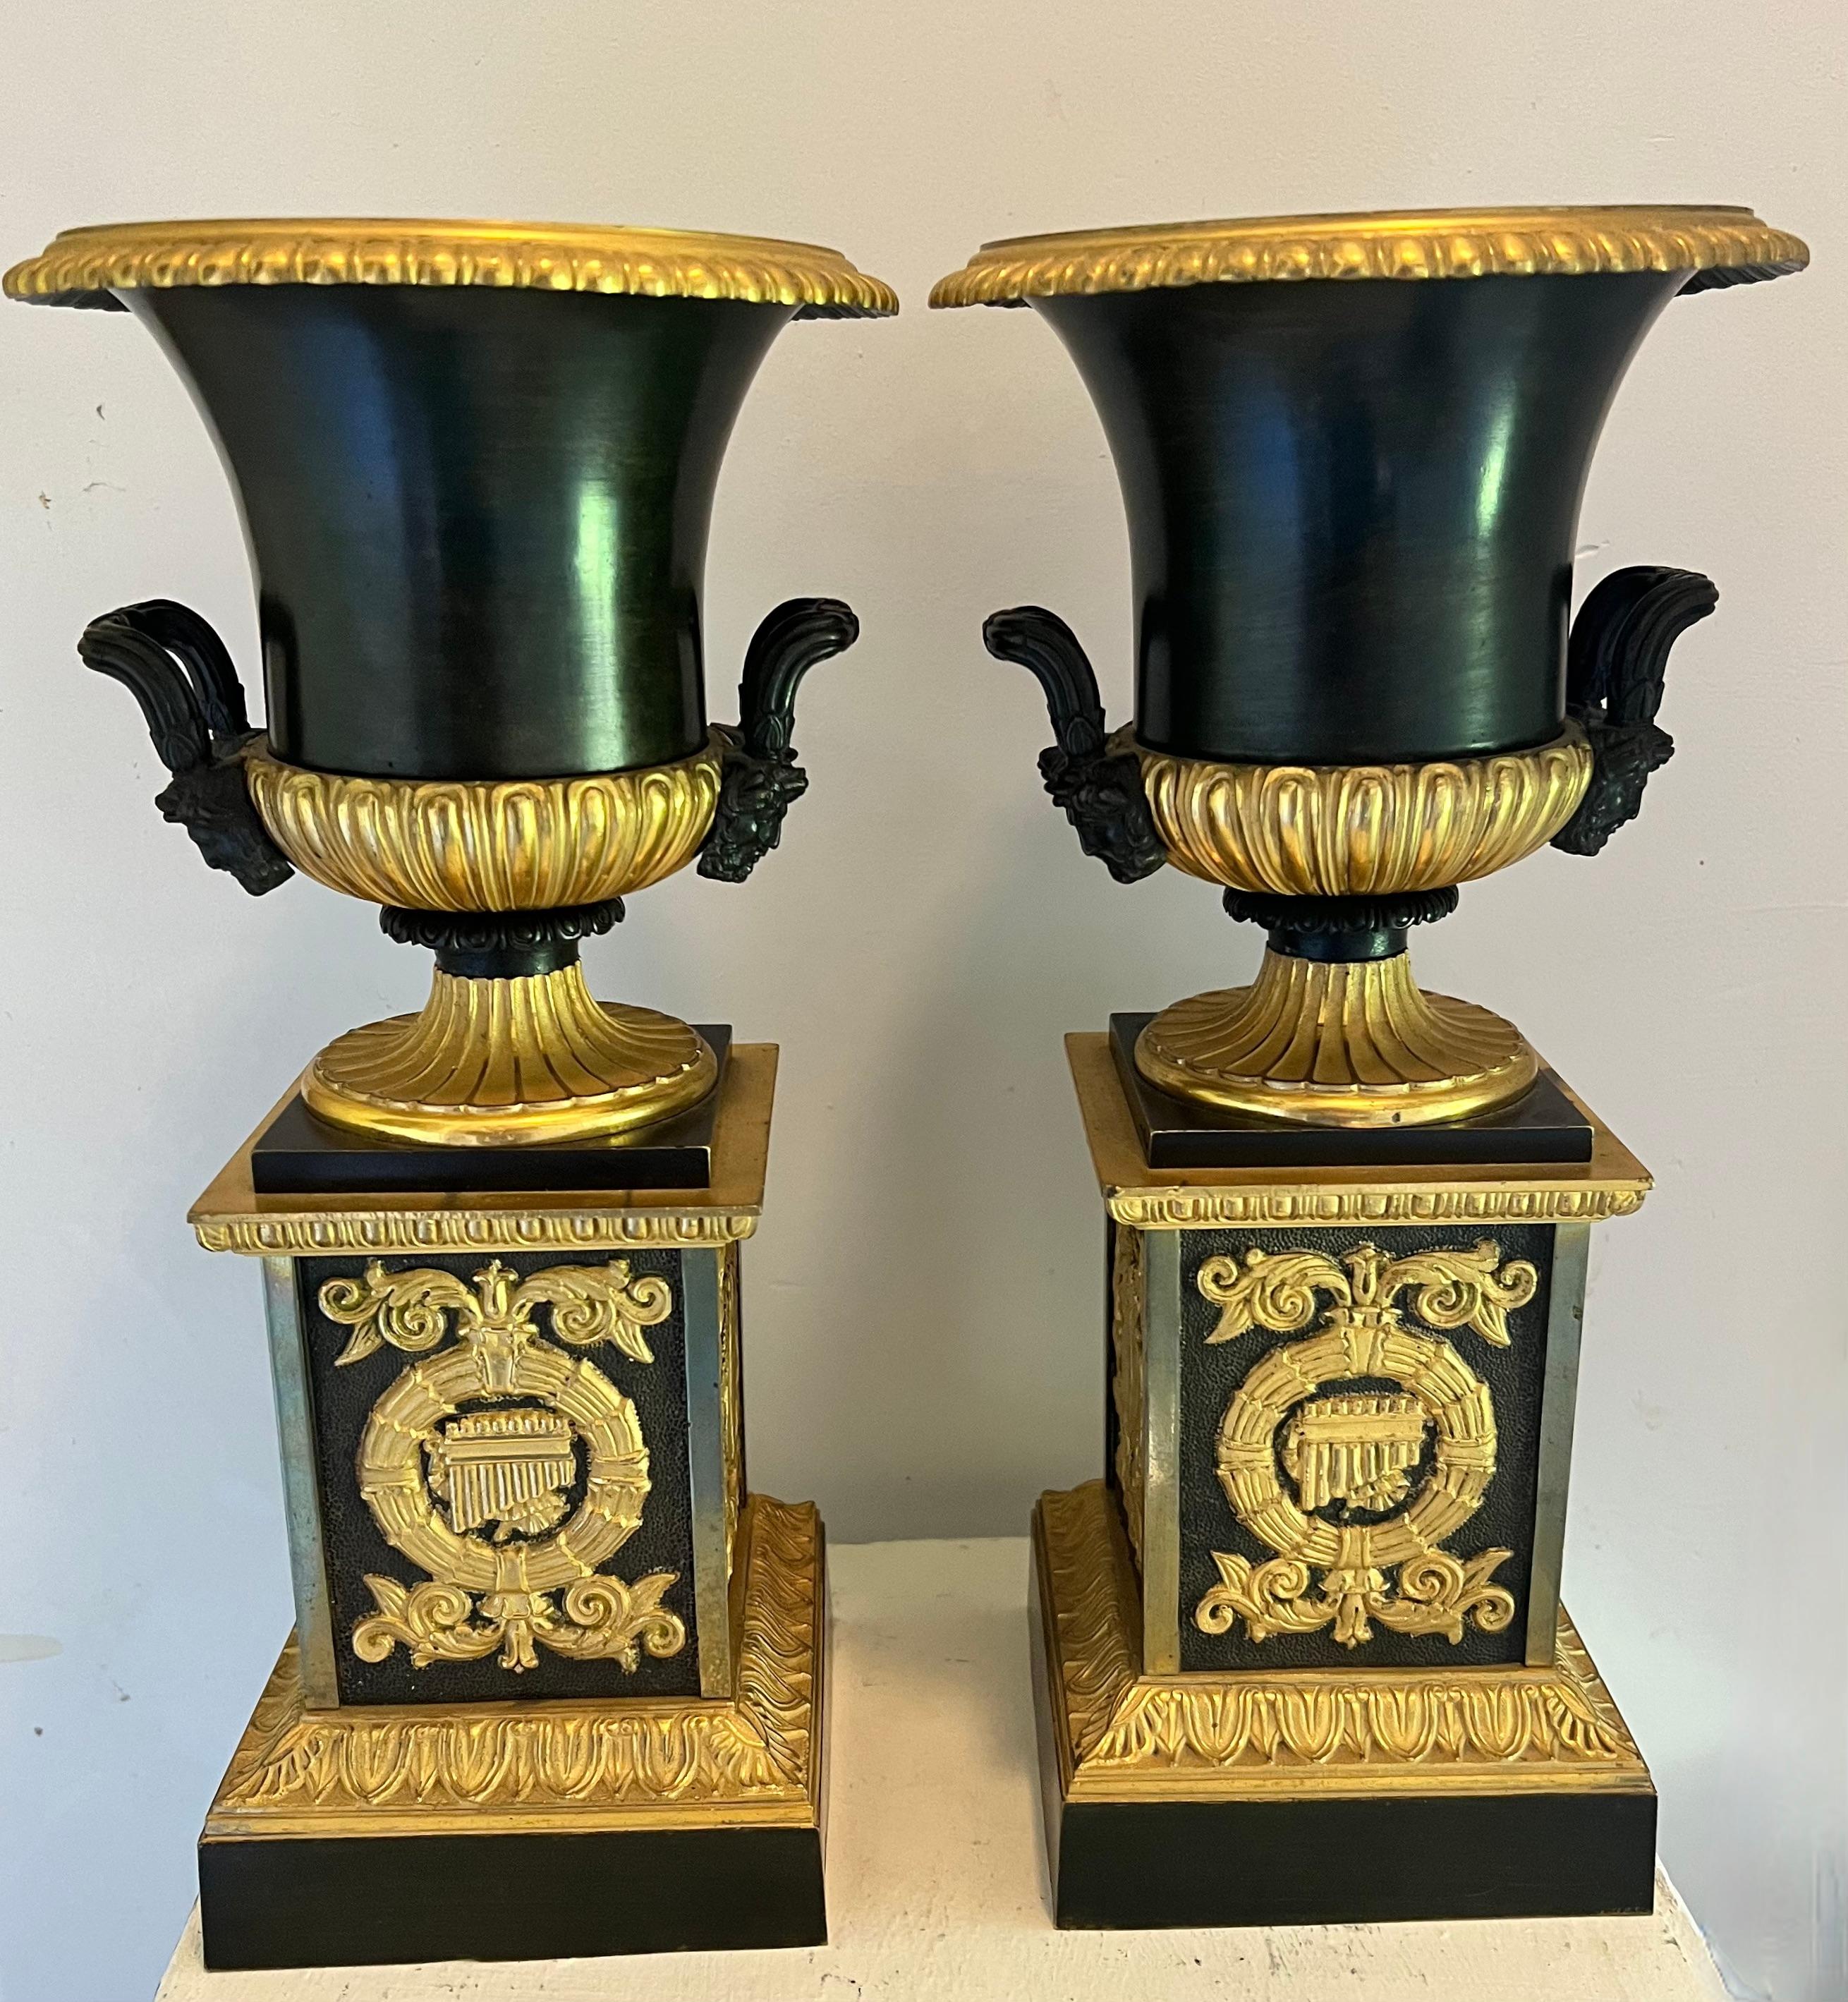 Ein wunderschönes Paar hochwertiger Dore Urnen aus Bronze auf Sockeln.  Das Paar ist in einem wunderbaren Vintage-Zustand.  eine kleine Biegung an der Lippe oder Kante von einem - nicht sehr auffällig oder beleidigend... die beiden sind ein tolles